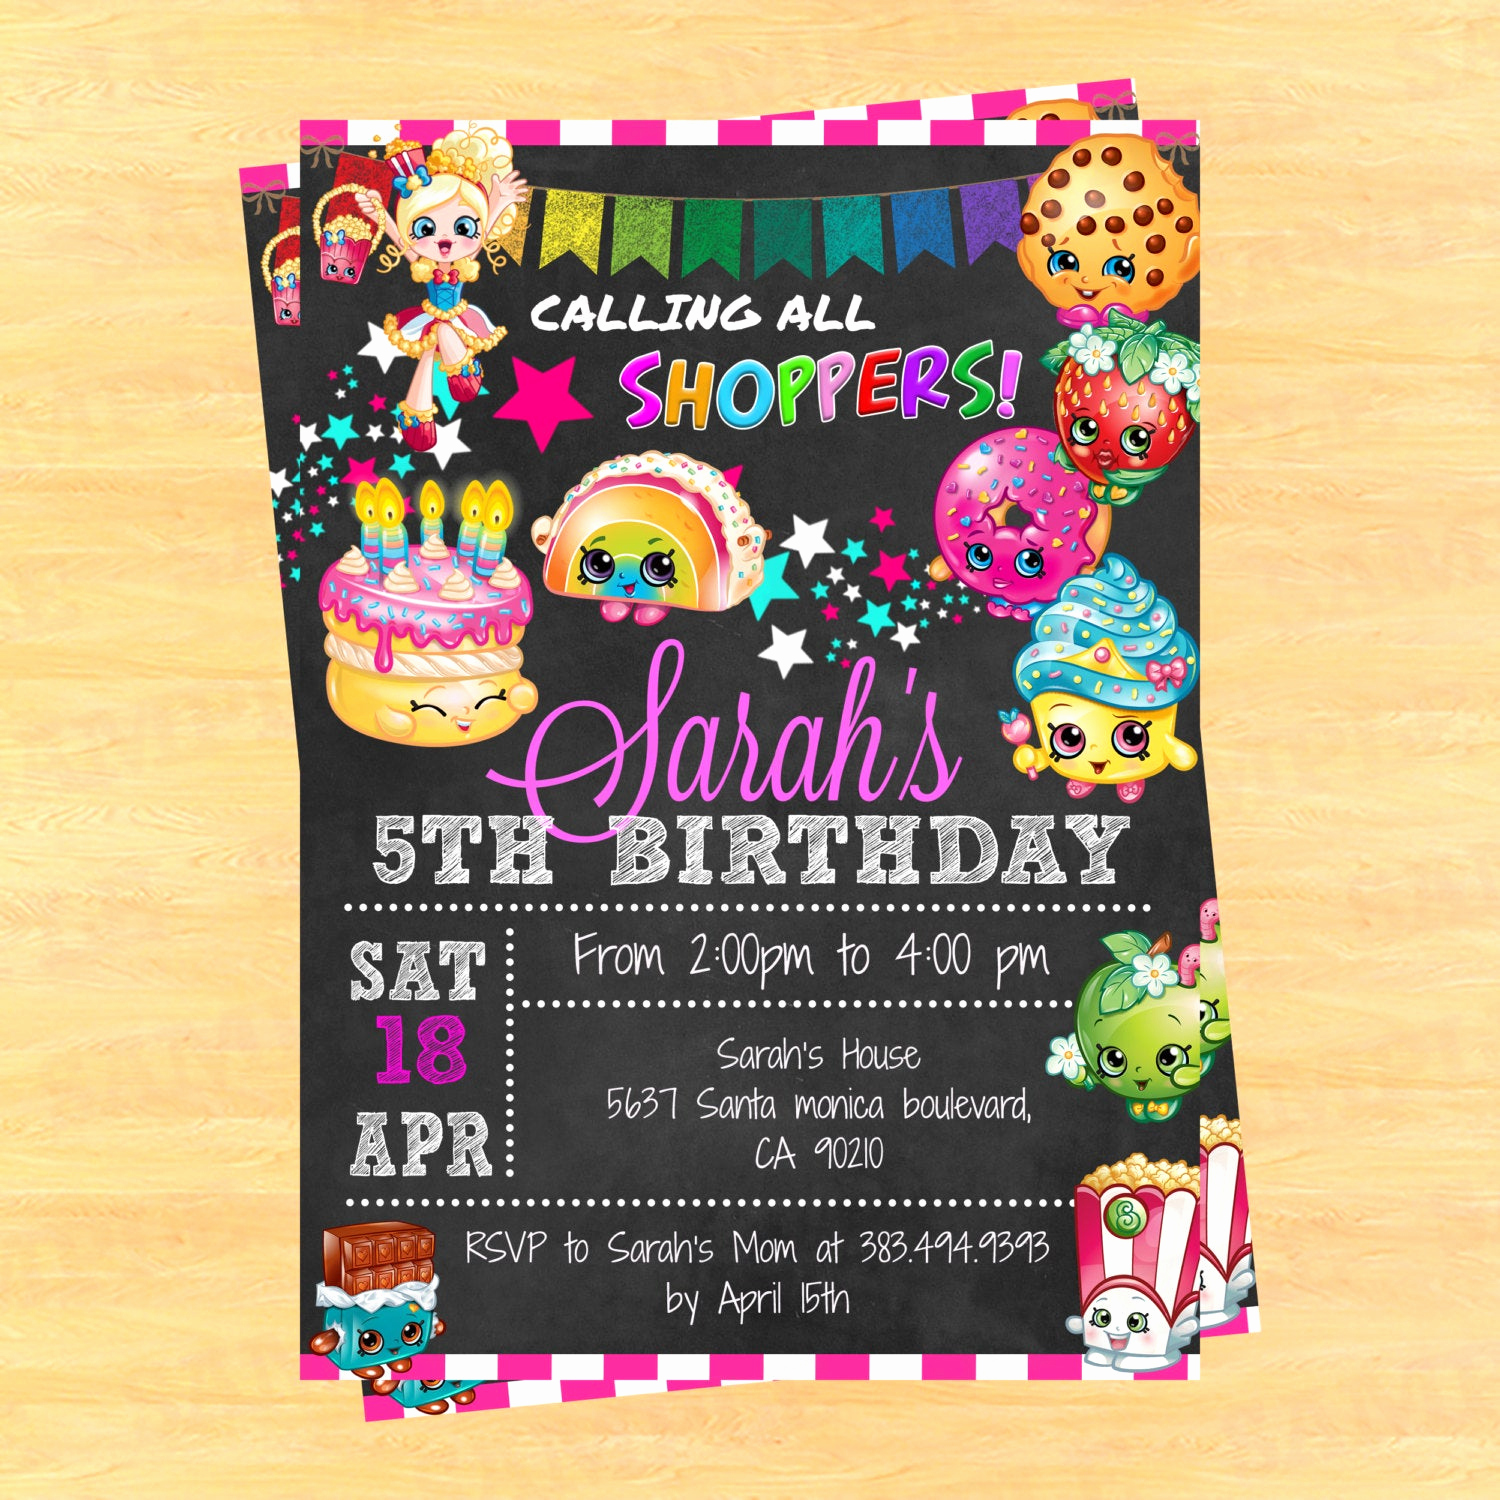 Shopkins Birthday Party Invitation Unique Printable Shopkins Birthday Party Invitation Shopkins